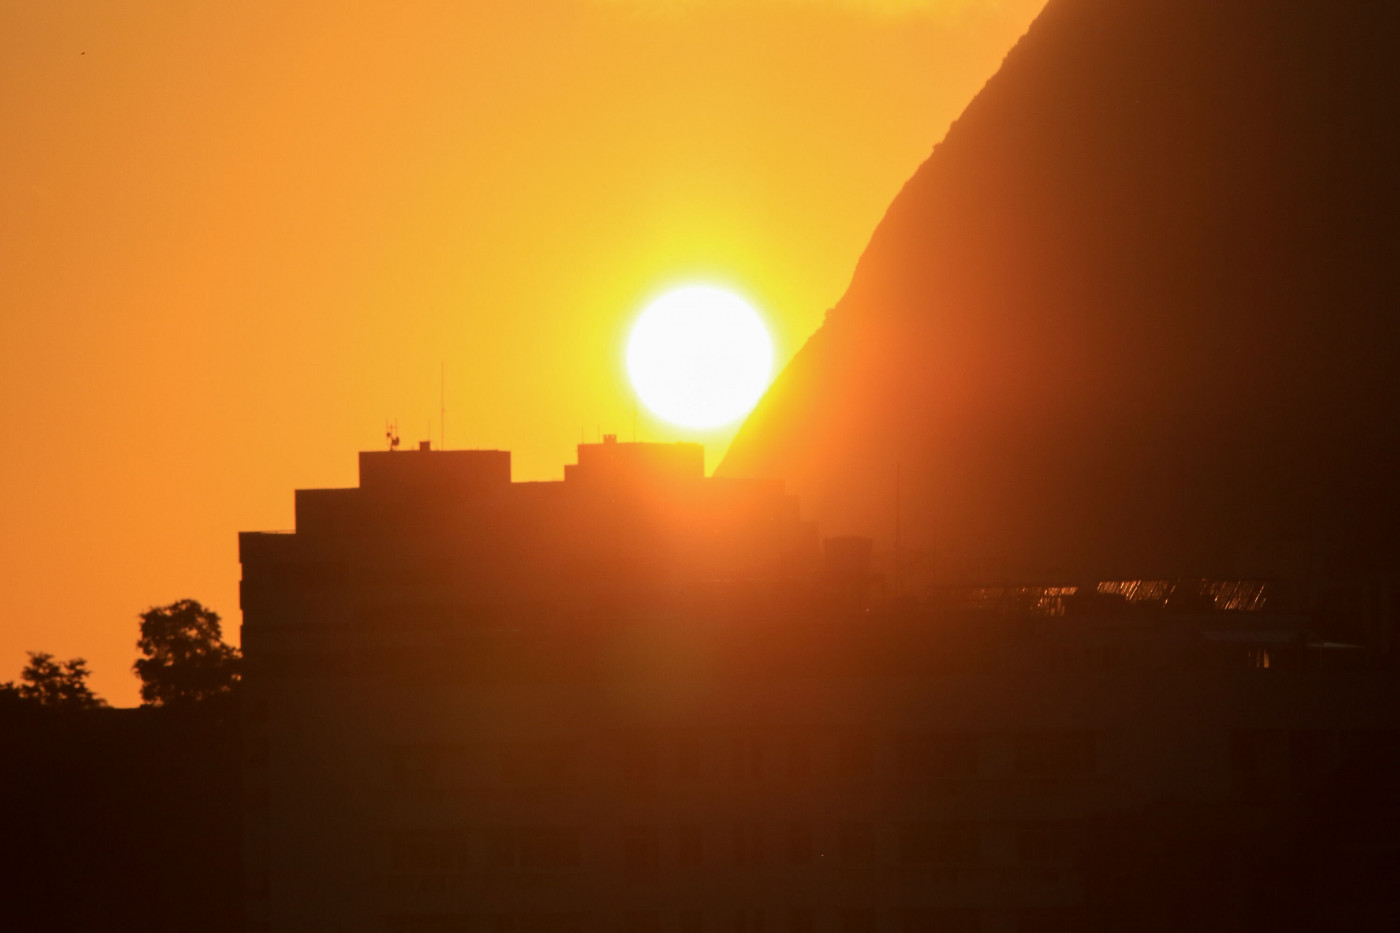 Detalhe do sol nascendo com vista do Pão de Açúcar a partir do bairro das Laranjeiras, na zona sul do Rio de Janeiro